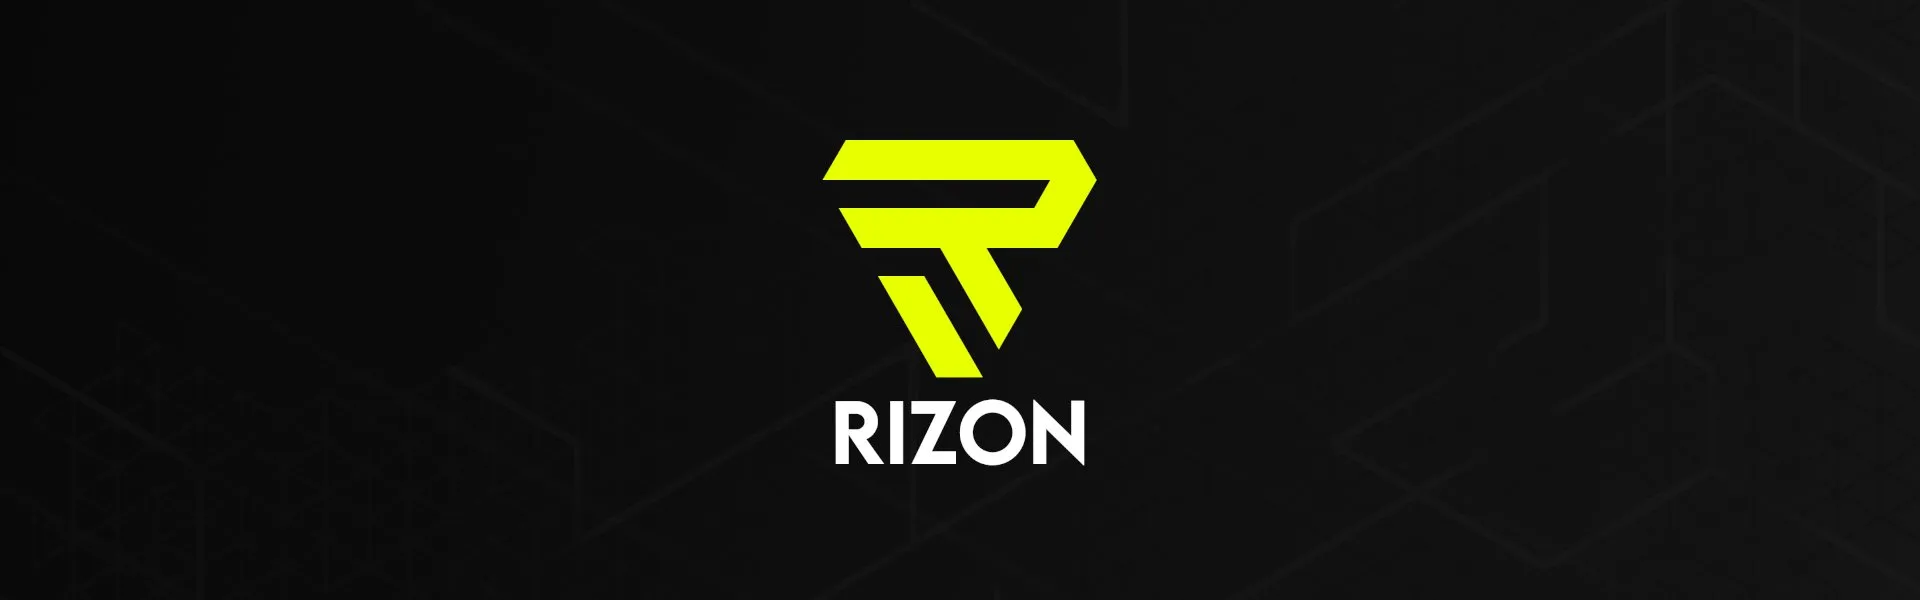 RIZON banner